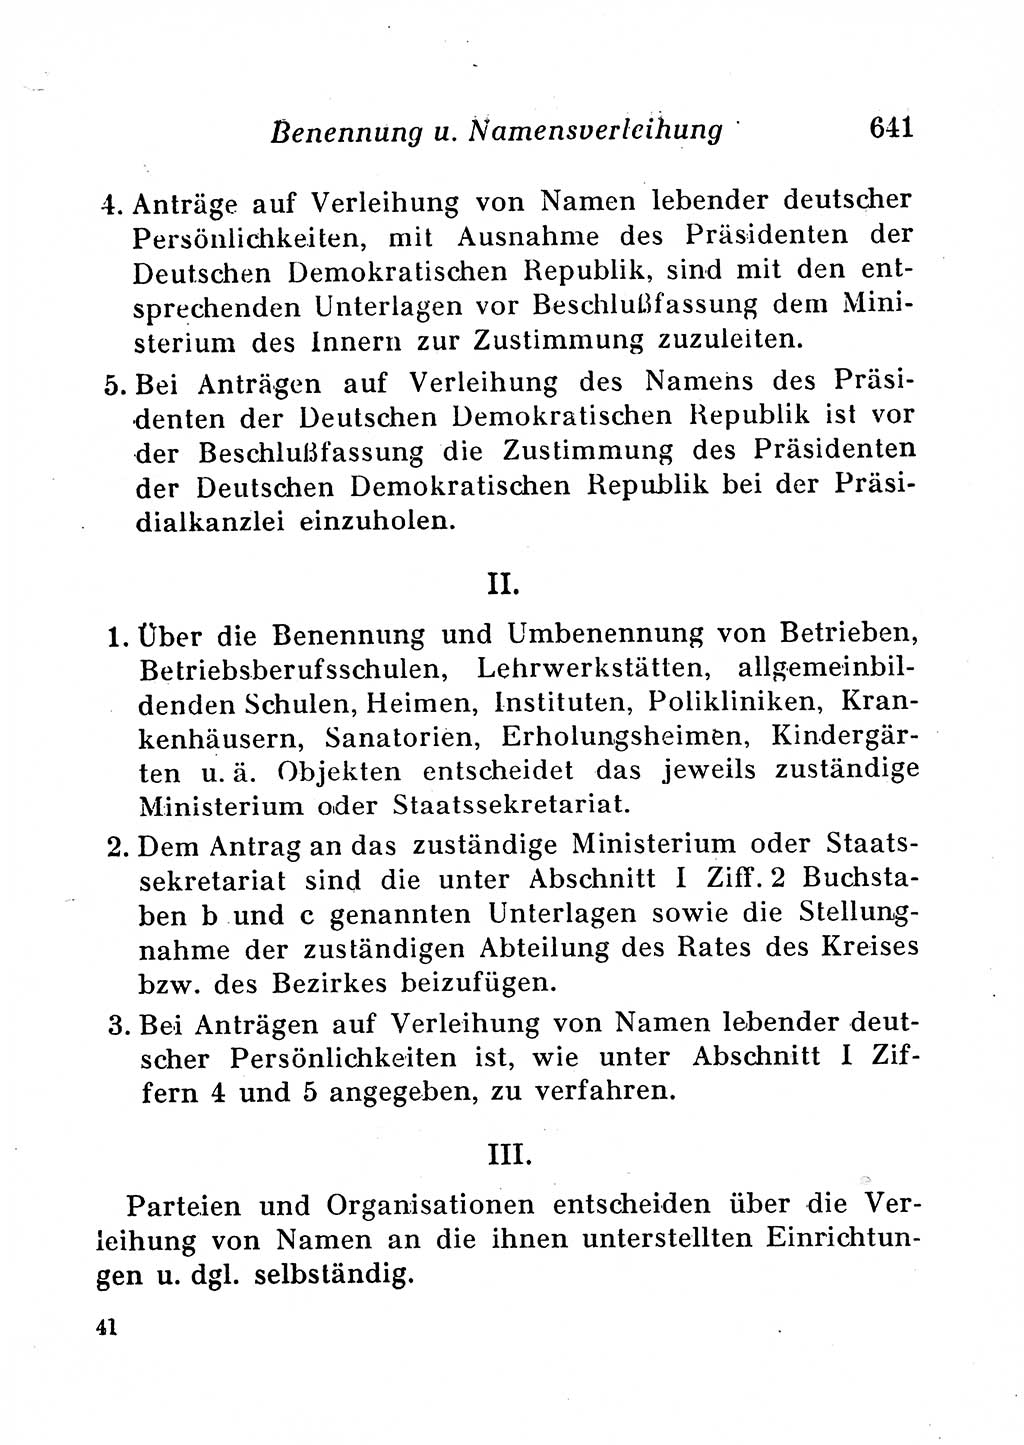 Staats- und verwaltungsrechtliche Gesetze der Deutschen Demokratischen Republik (DDR) 1958, Seite 641 (StVerwR Ges. DDR 1958, S. 641)